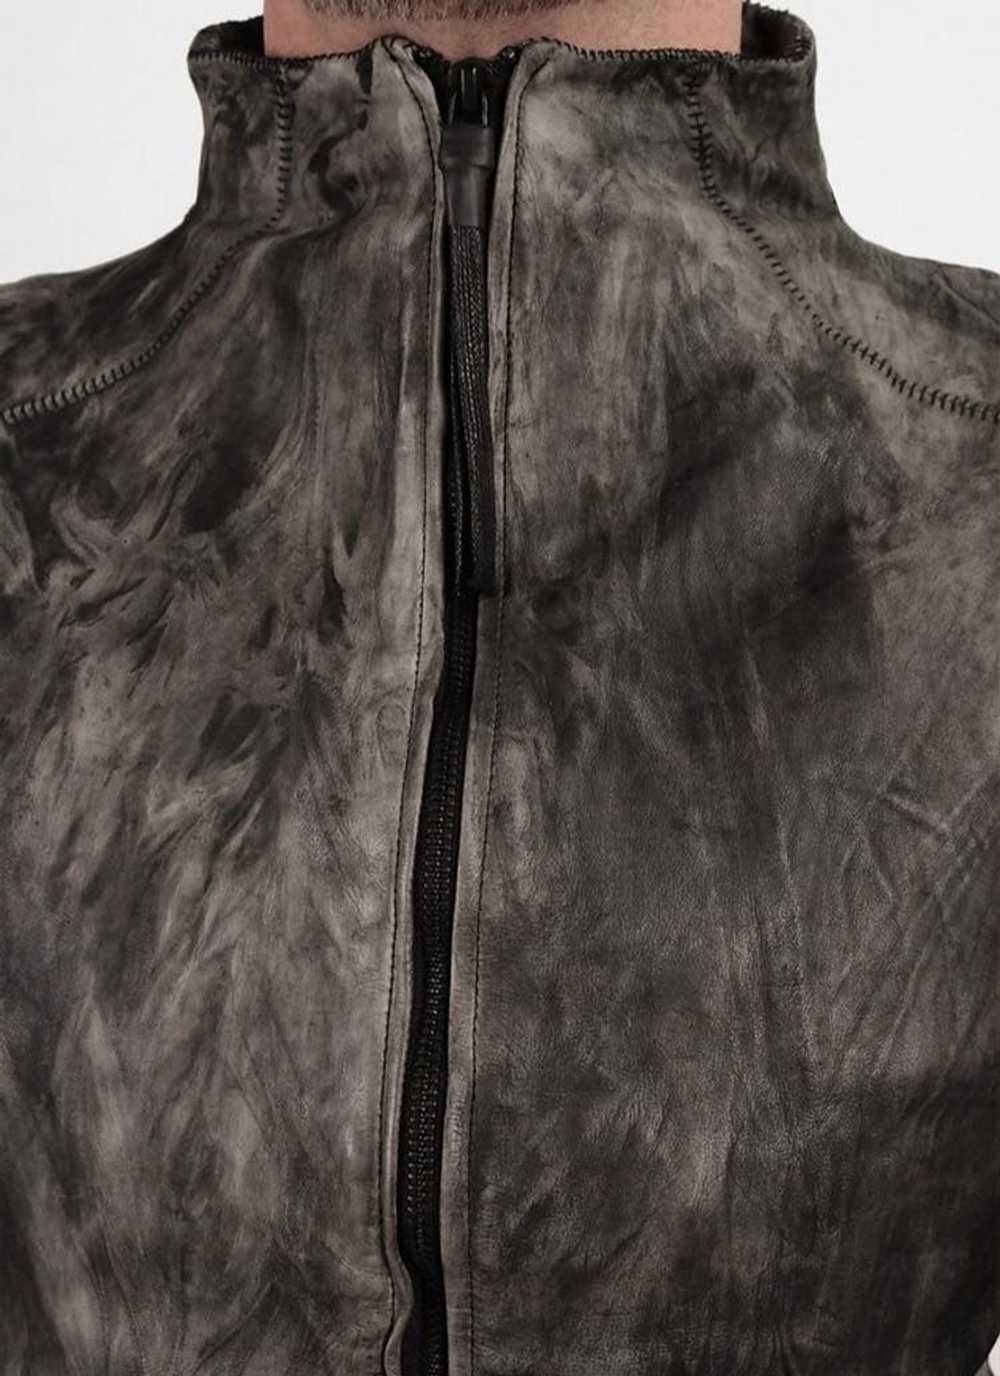 Delusion Object London Baby Buffalo Leather Jacket - image 4